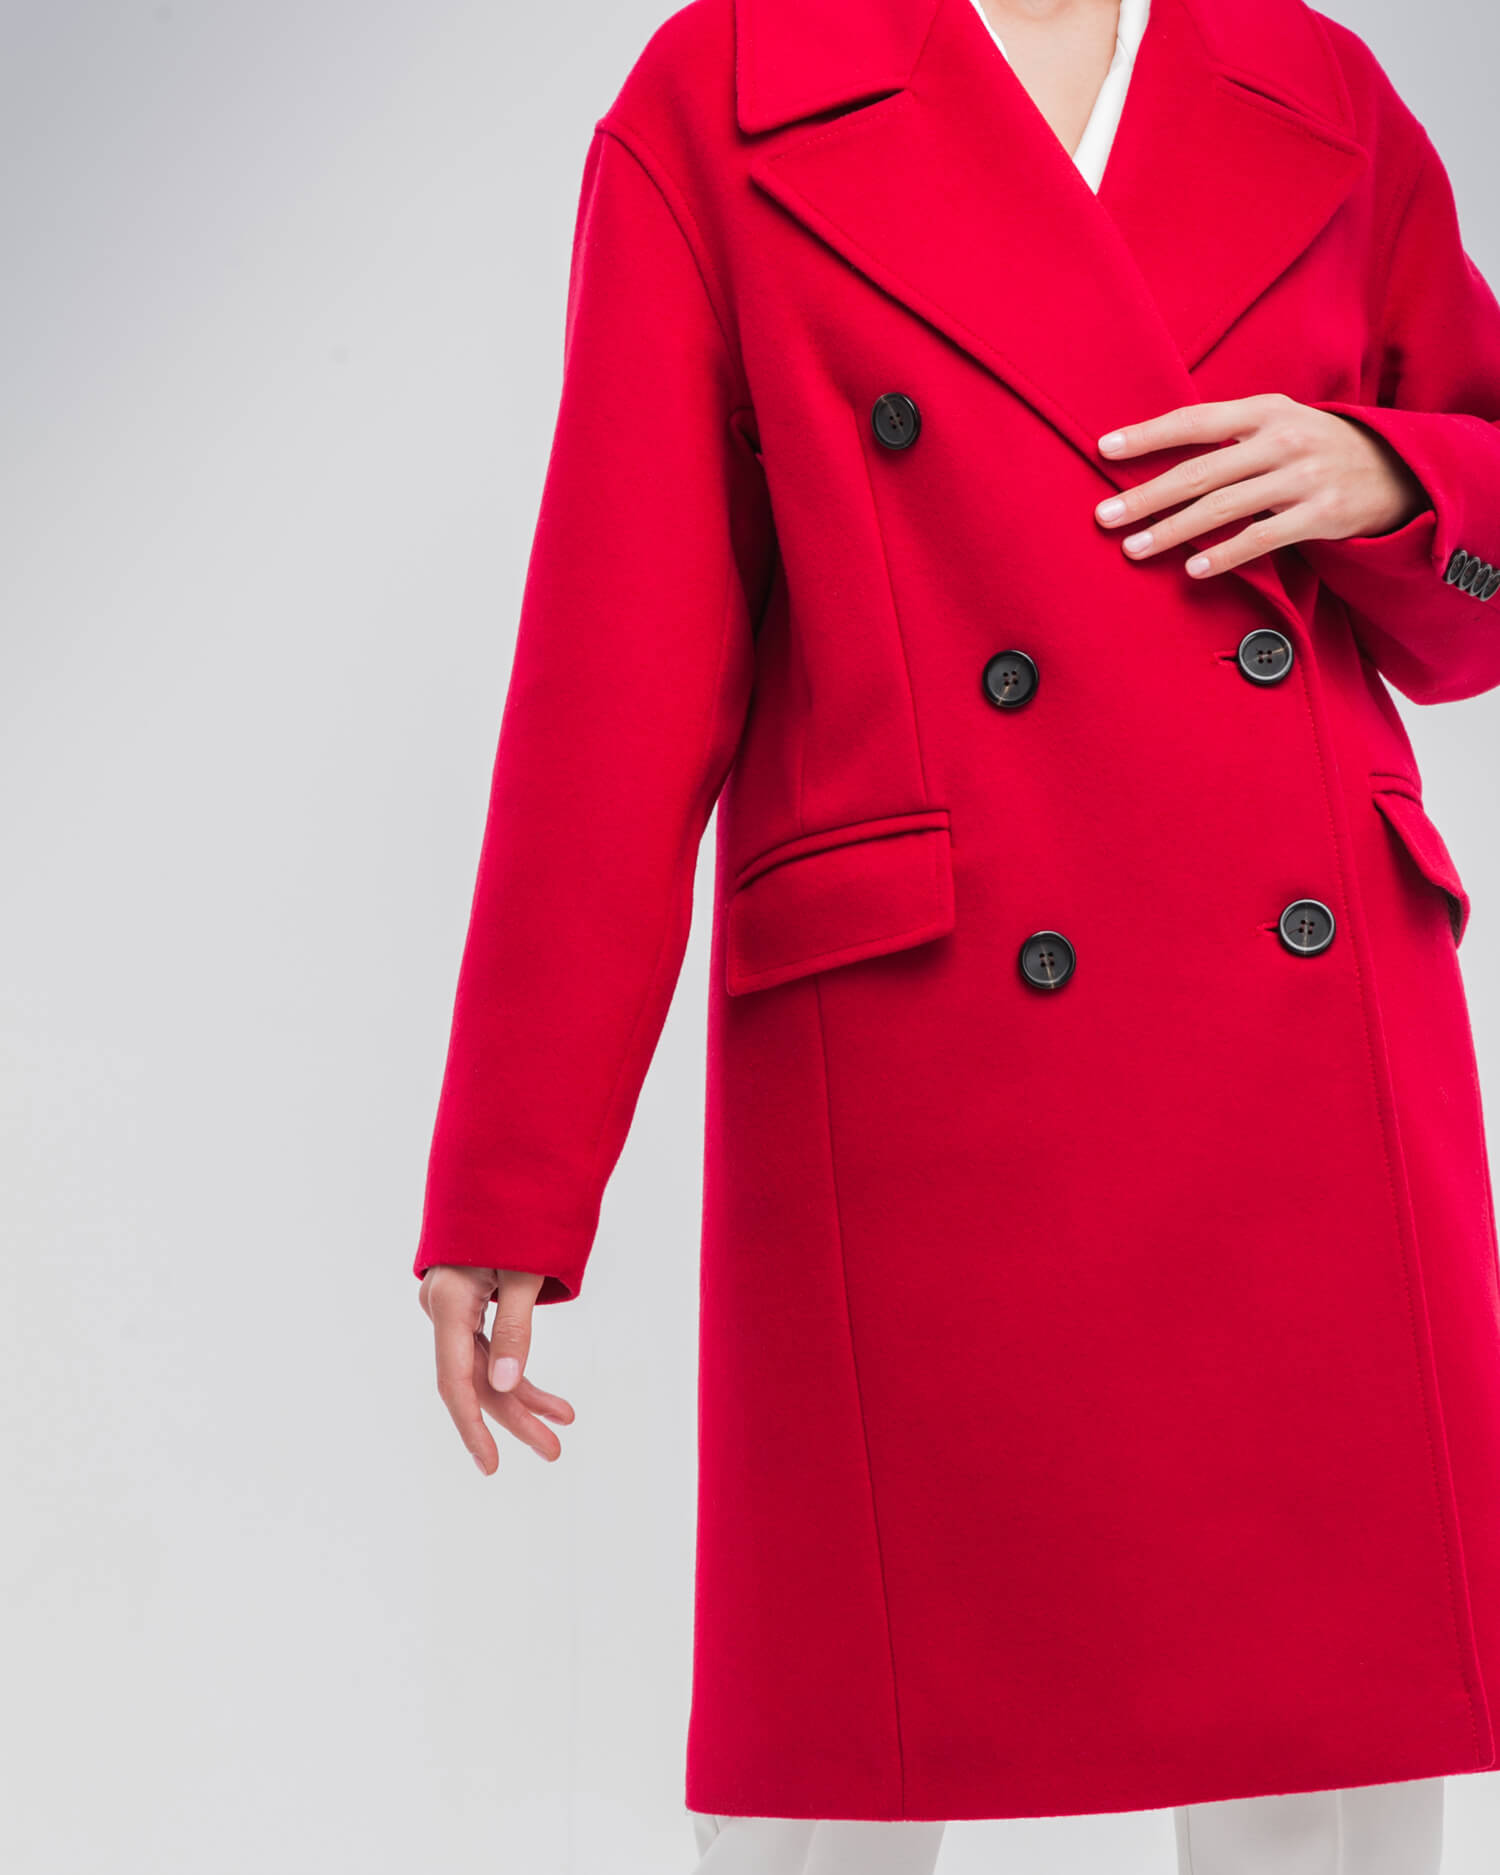 Modico пальто. All we need пальто кокон. Двубортное пальто кокон. Двубортное рыжее пальто.